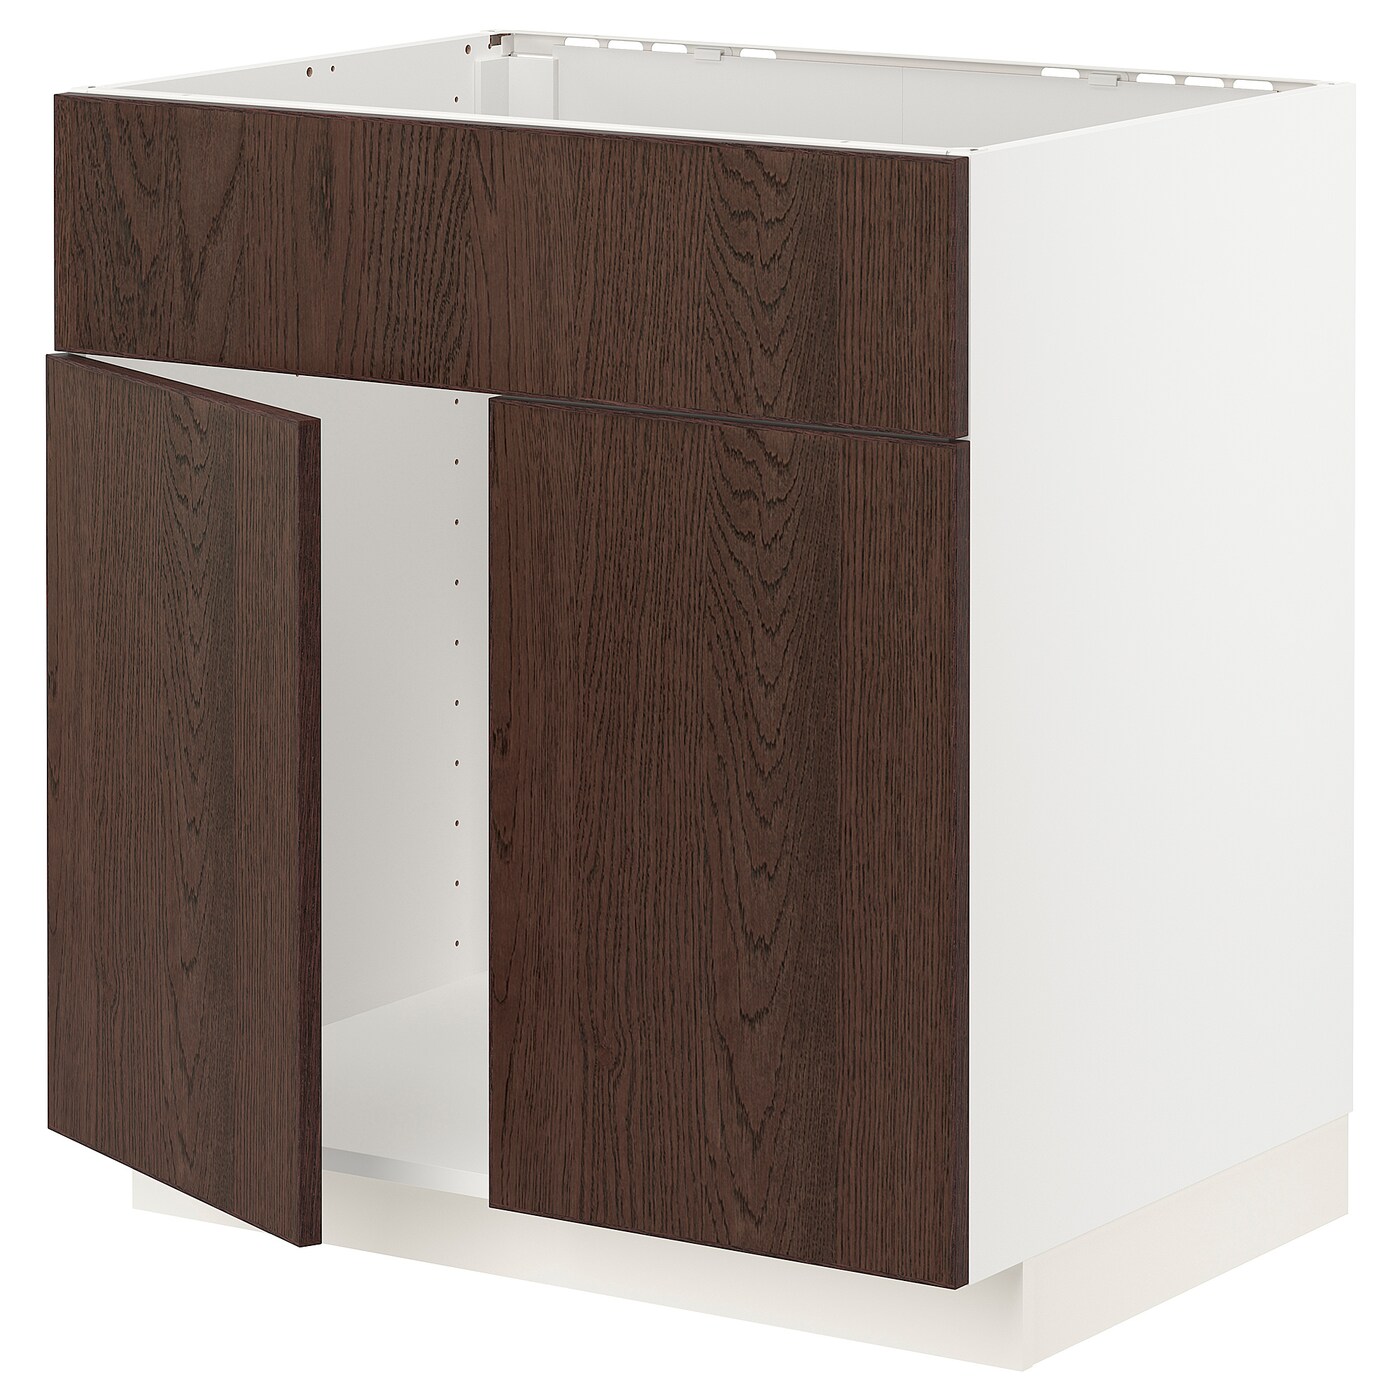 Напольный шкаф  - IKEA METOD, 88x62x80см, белый/коричневый, МЕТОД ИКЕА